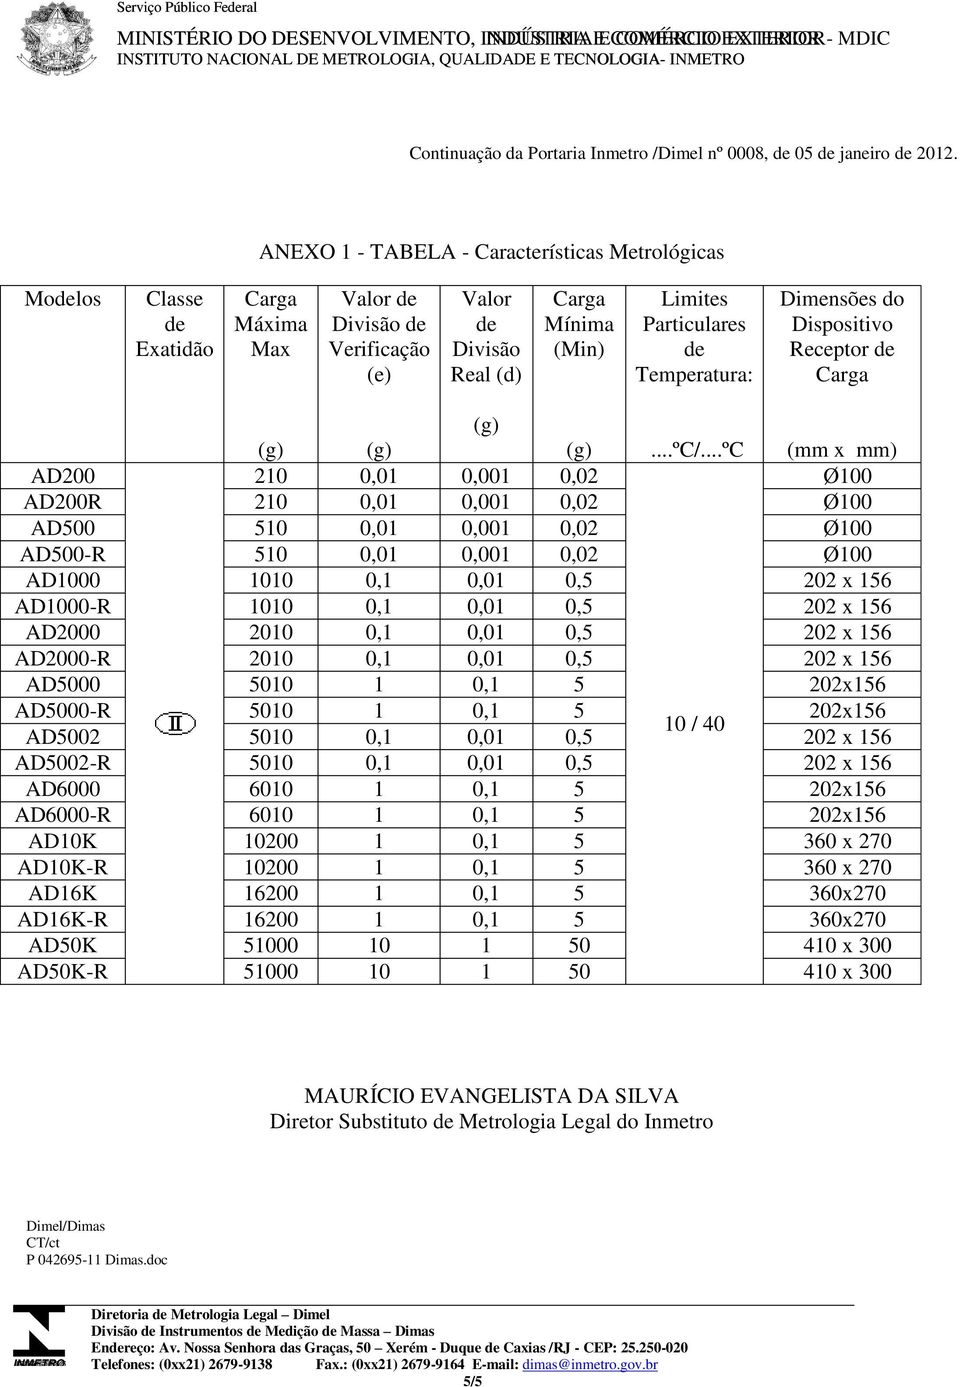 ANEXO 1 - TABELA - Características Metrológicas Modelos Classe de Exatidão Carga Máxima Max Valor de Divisão de Verificação (e) Valor de Divisão Real (d) Carga Mínima (Min) Limites Particulares de